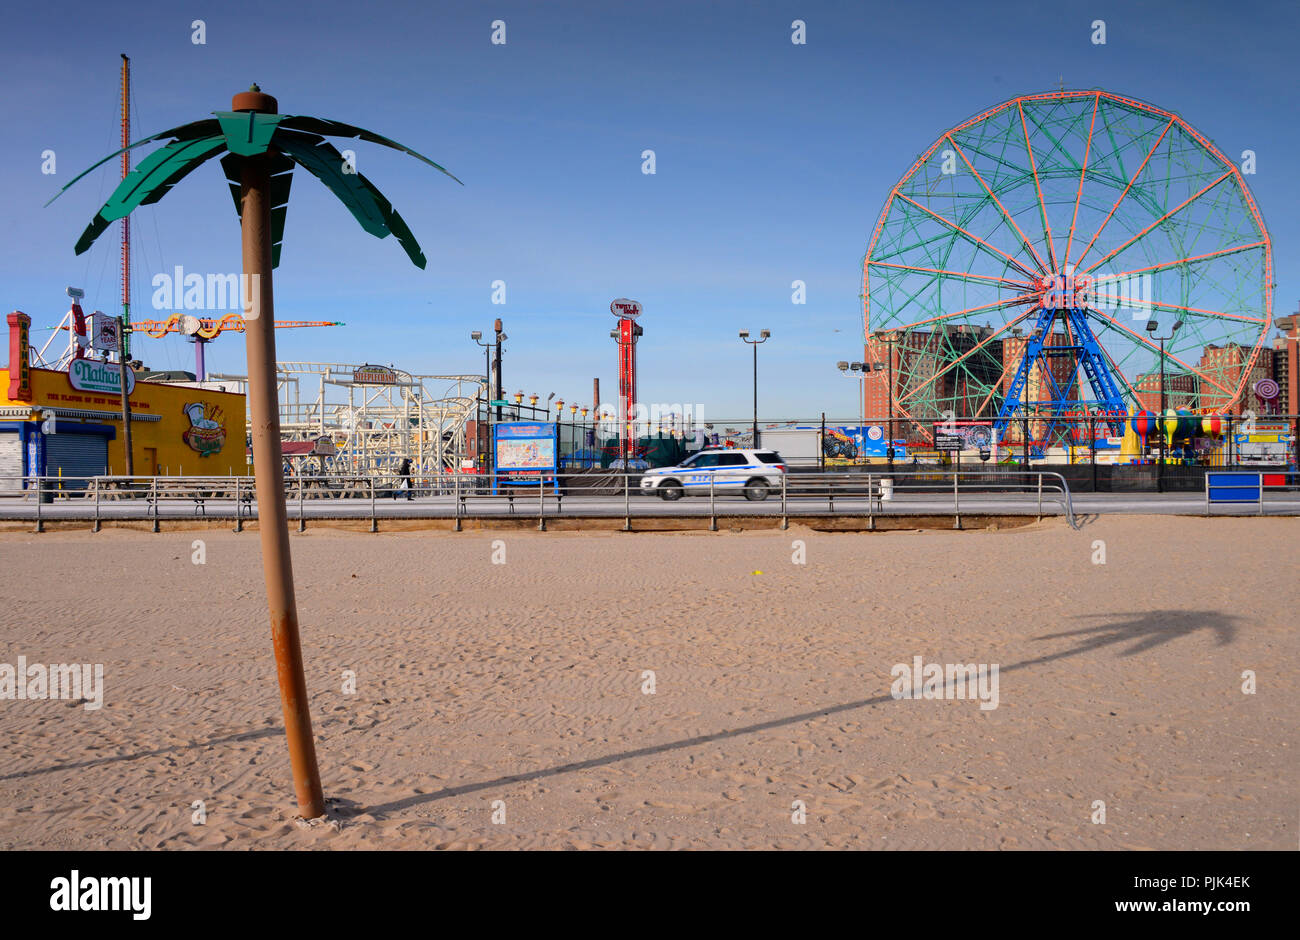 Spiaggia con palme artificiali a Coney Island, Brooklyn, New York City, Stati Uniti d'America, in background il Luna Park con ruota panoramica Ferris, Foto Stock